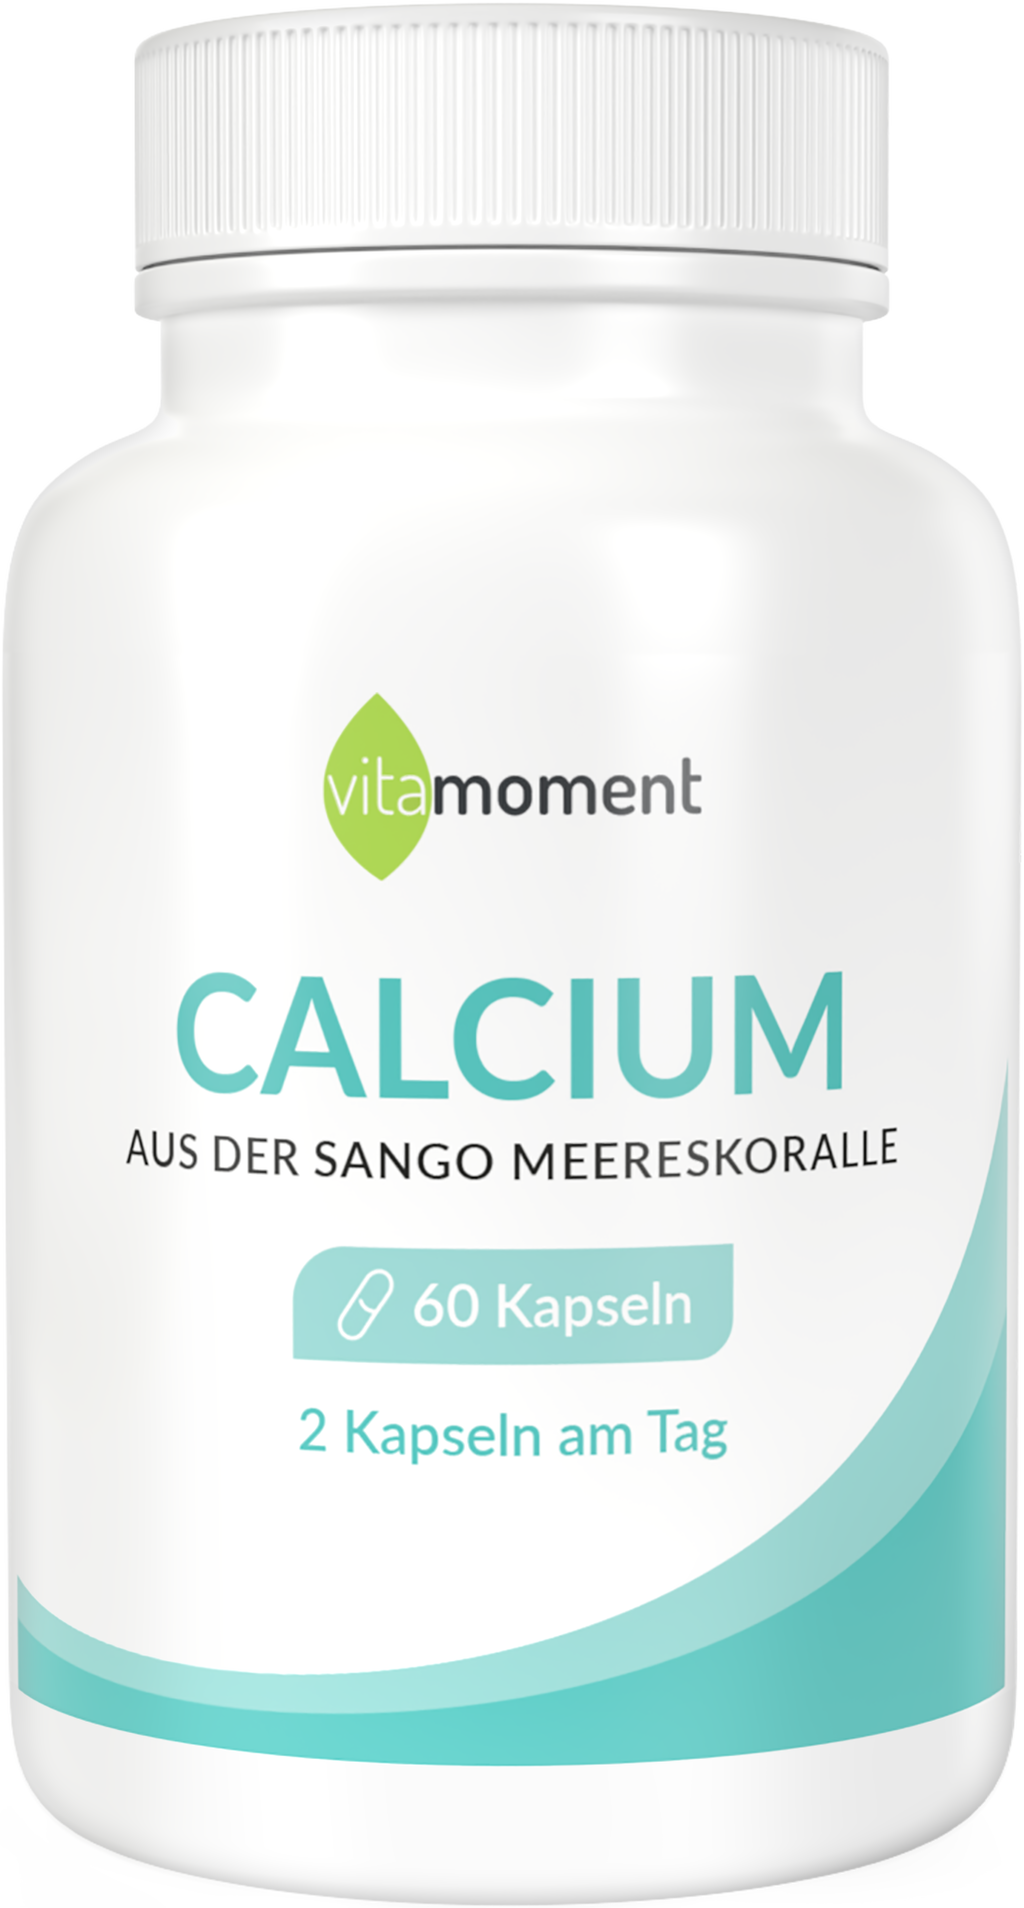 Calcium - 1 Dose - VitaMoment Produkt